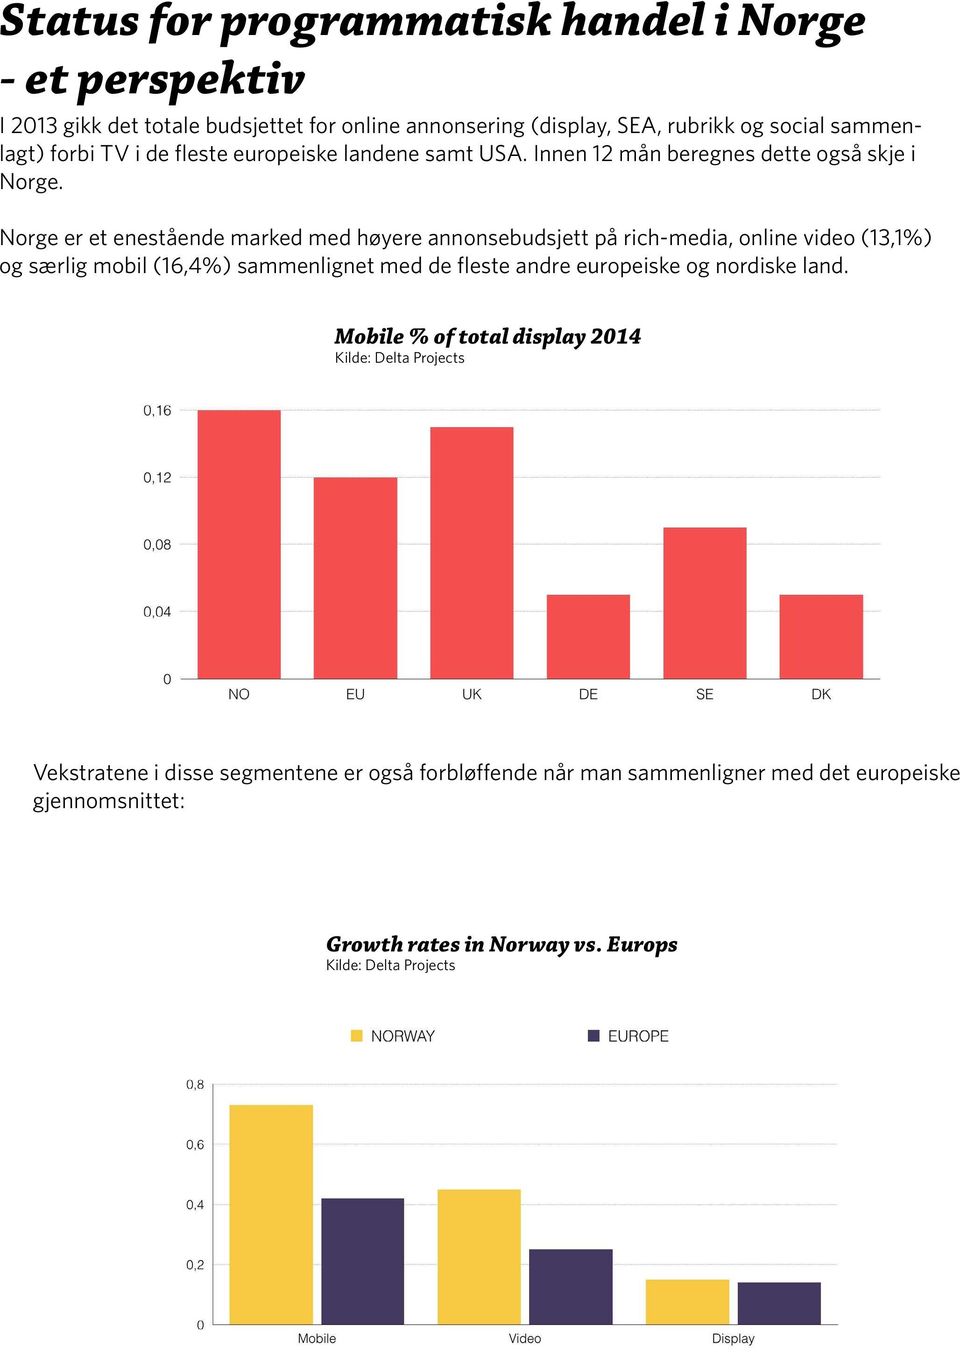 Norge er et enestående marked med høyere annonsebudsjett på rich-media, online video (13,1%) og særlig mobil (16,4%) sammenlignet med de fleste andre